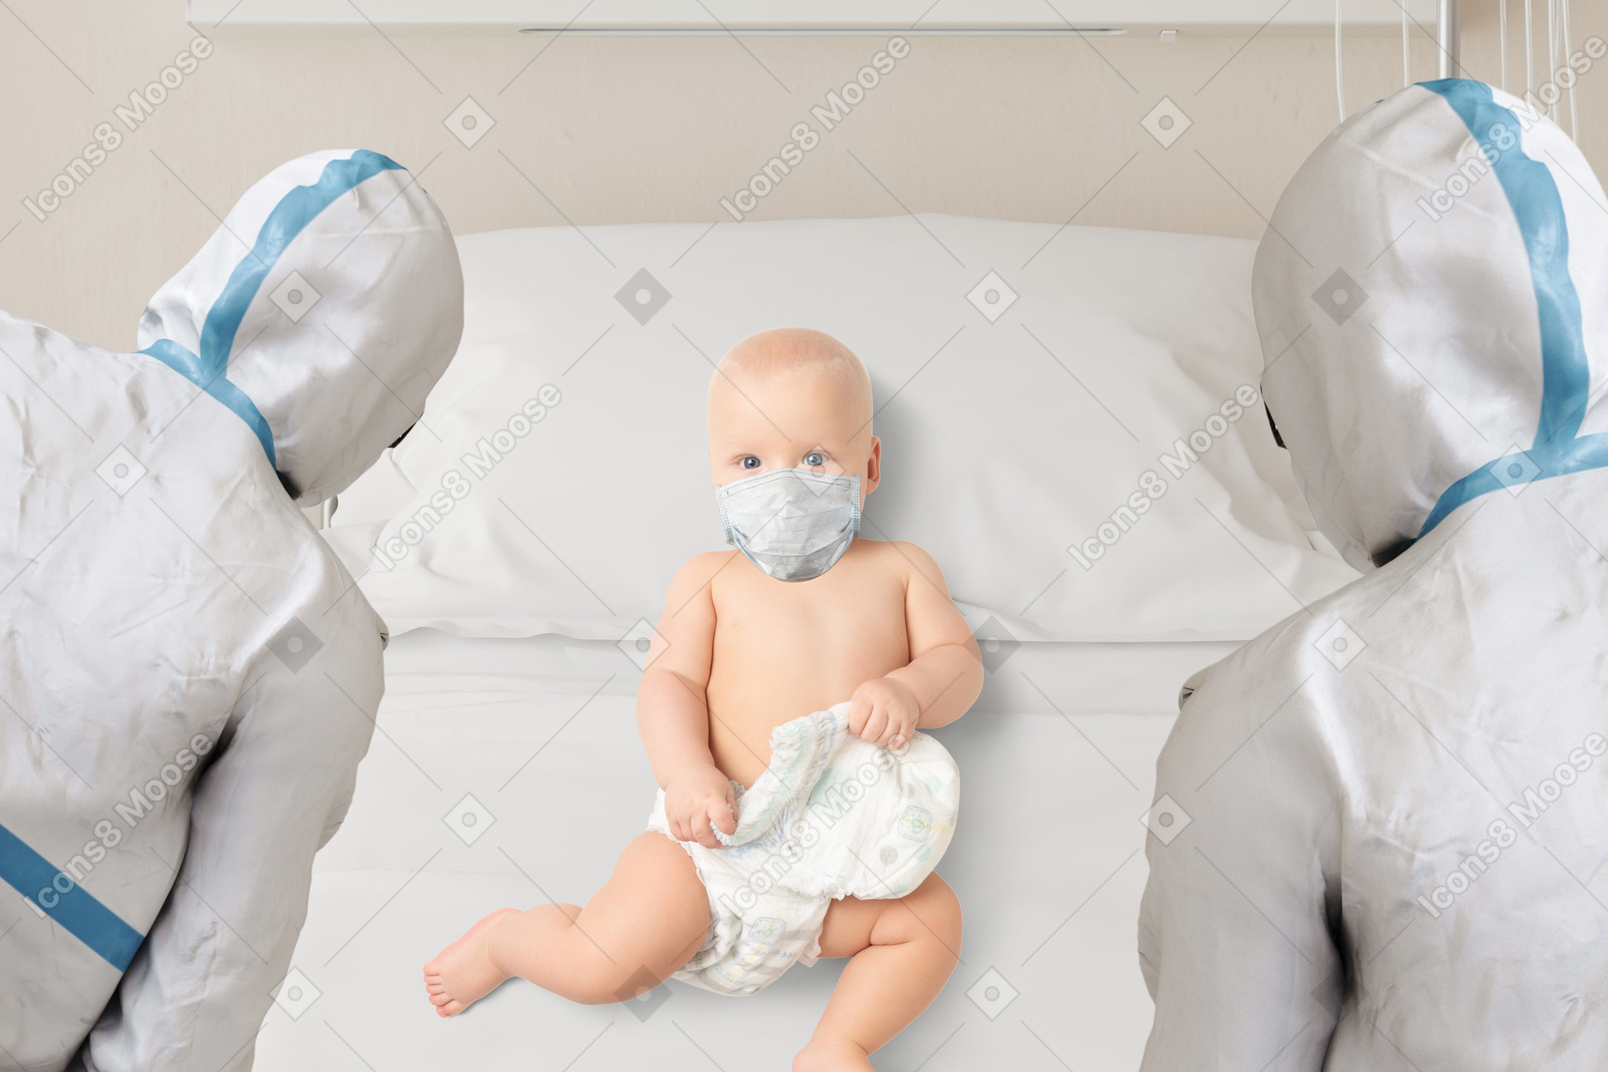 Ребенок лежит на больничной койке в окружении врачей в защитном снаряжении